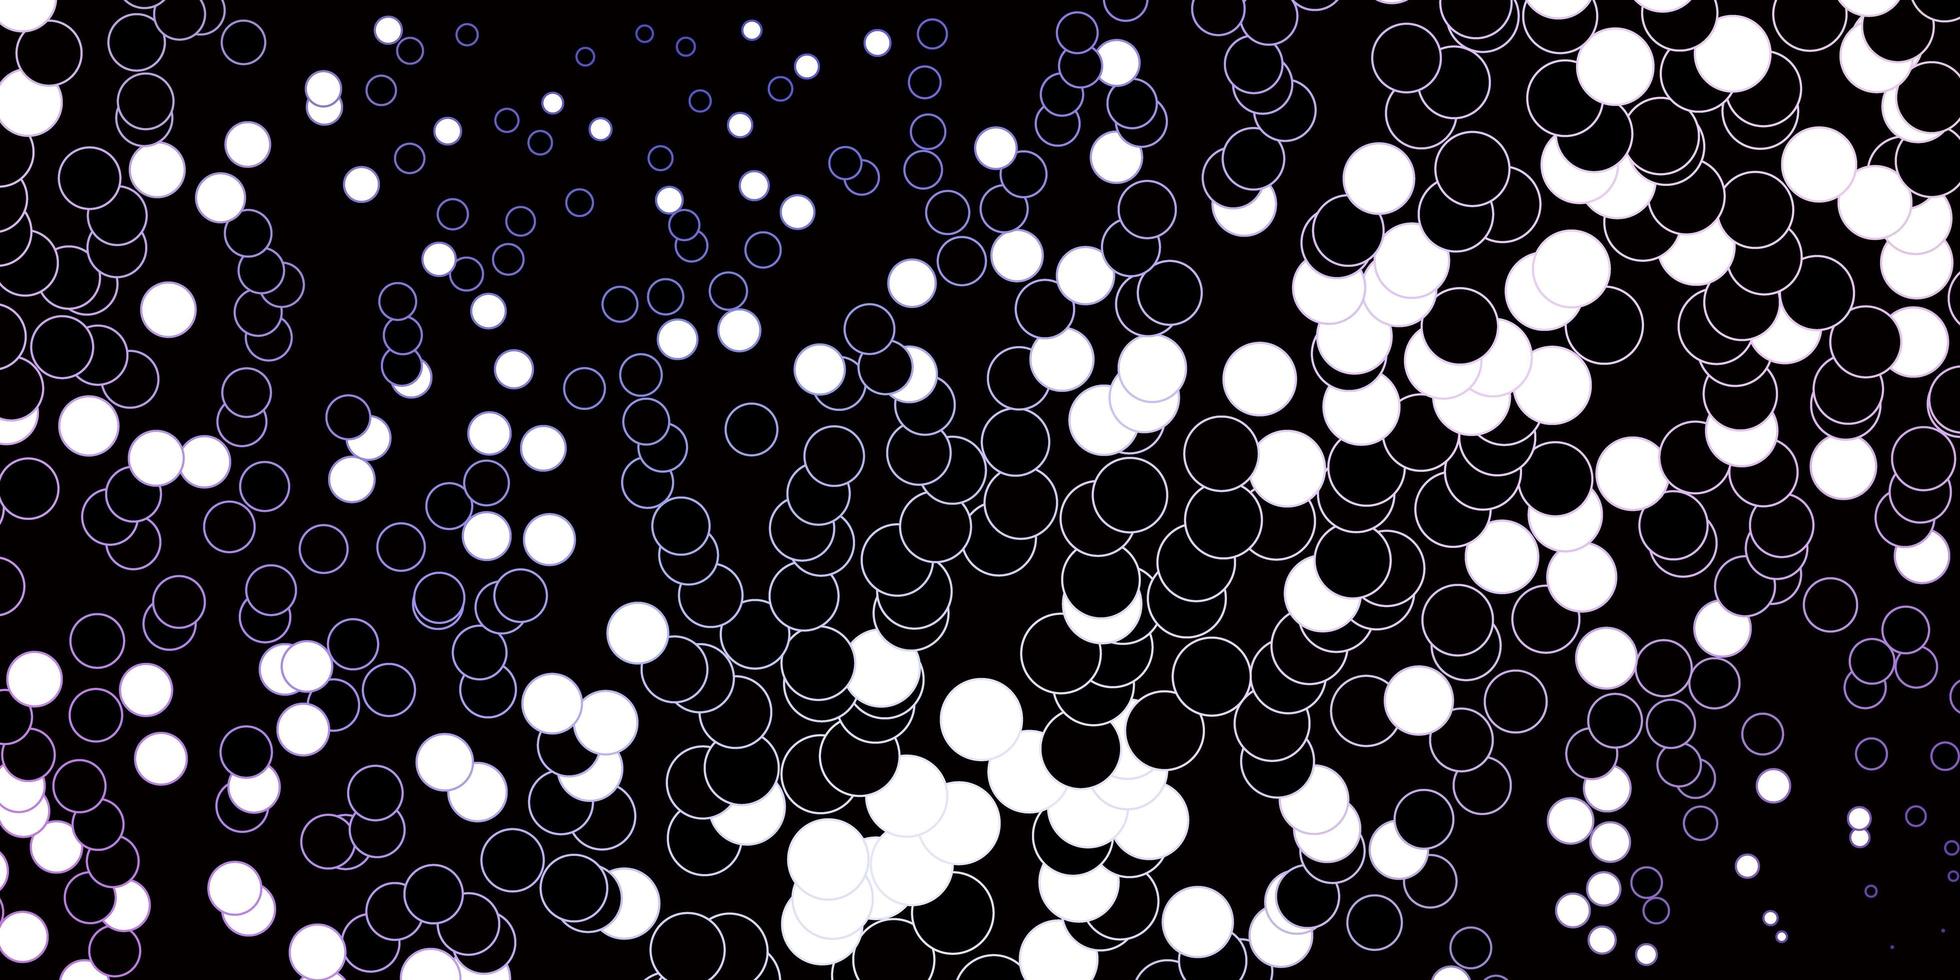 patrón de vector de color rosa oscuro, azul con esferas. Ilustración abstracta con manchas de colores en el estilo de la naturaleza. patrón para sitios web.